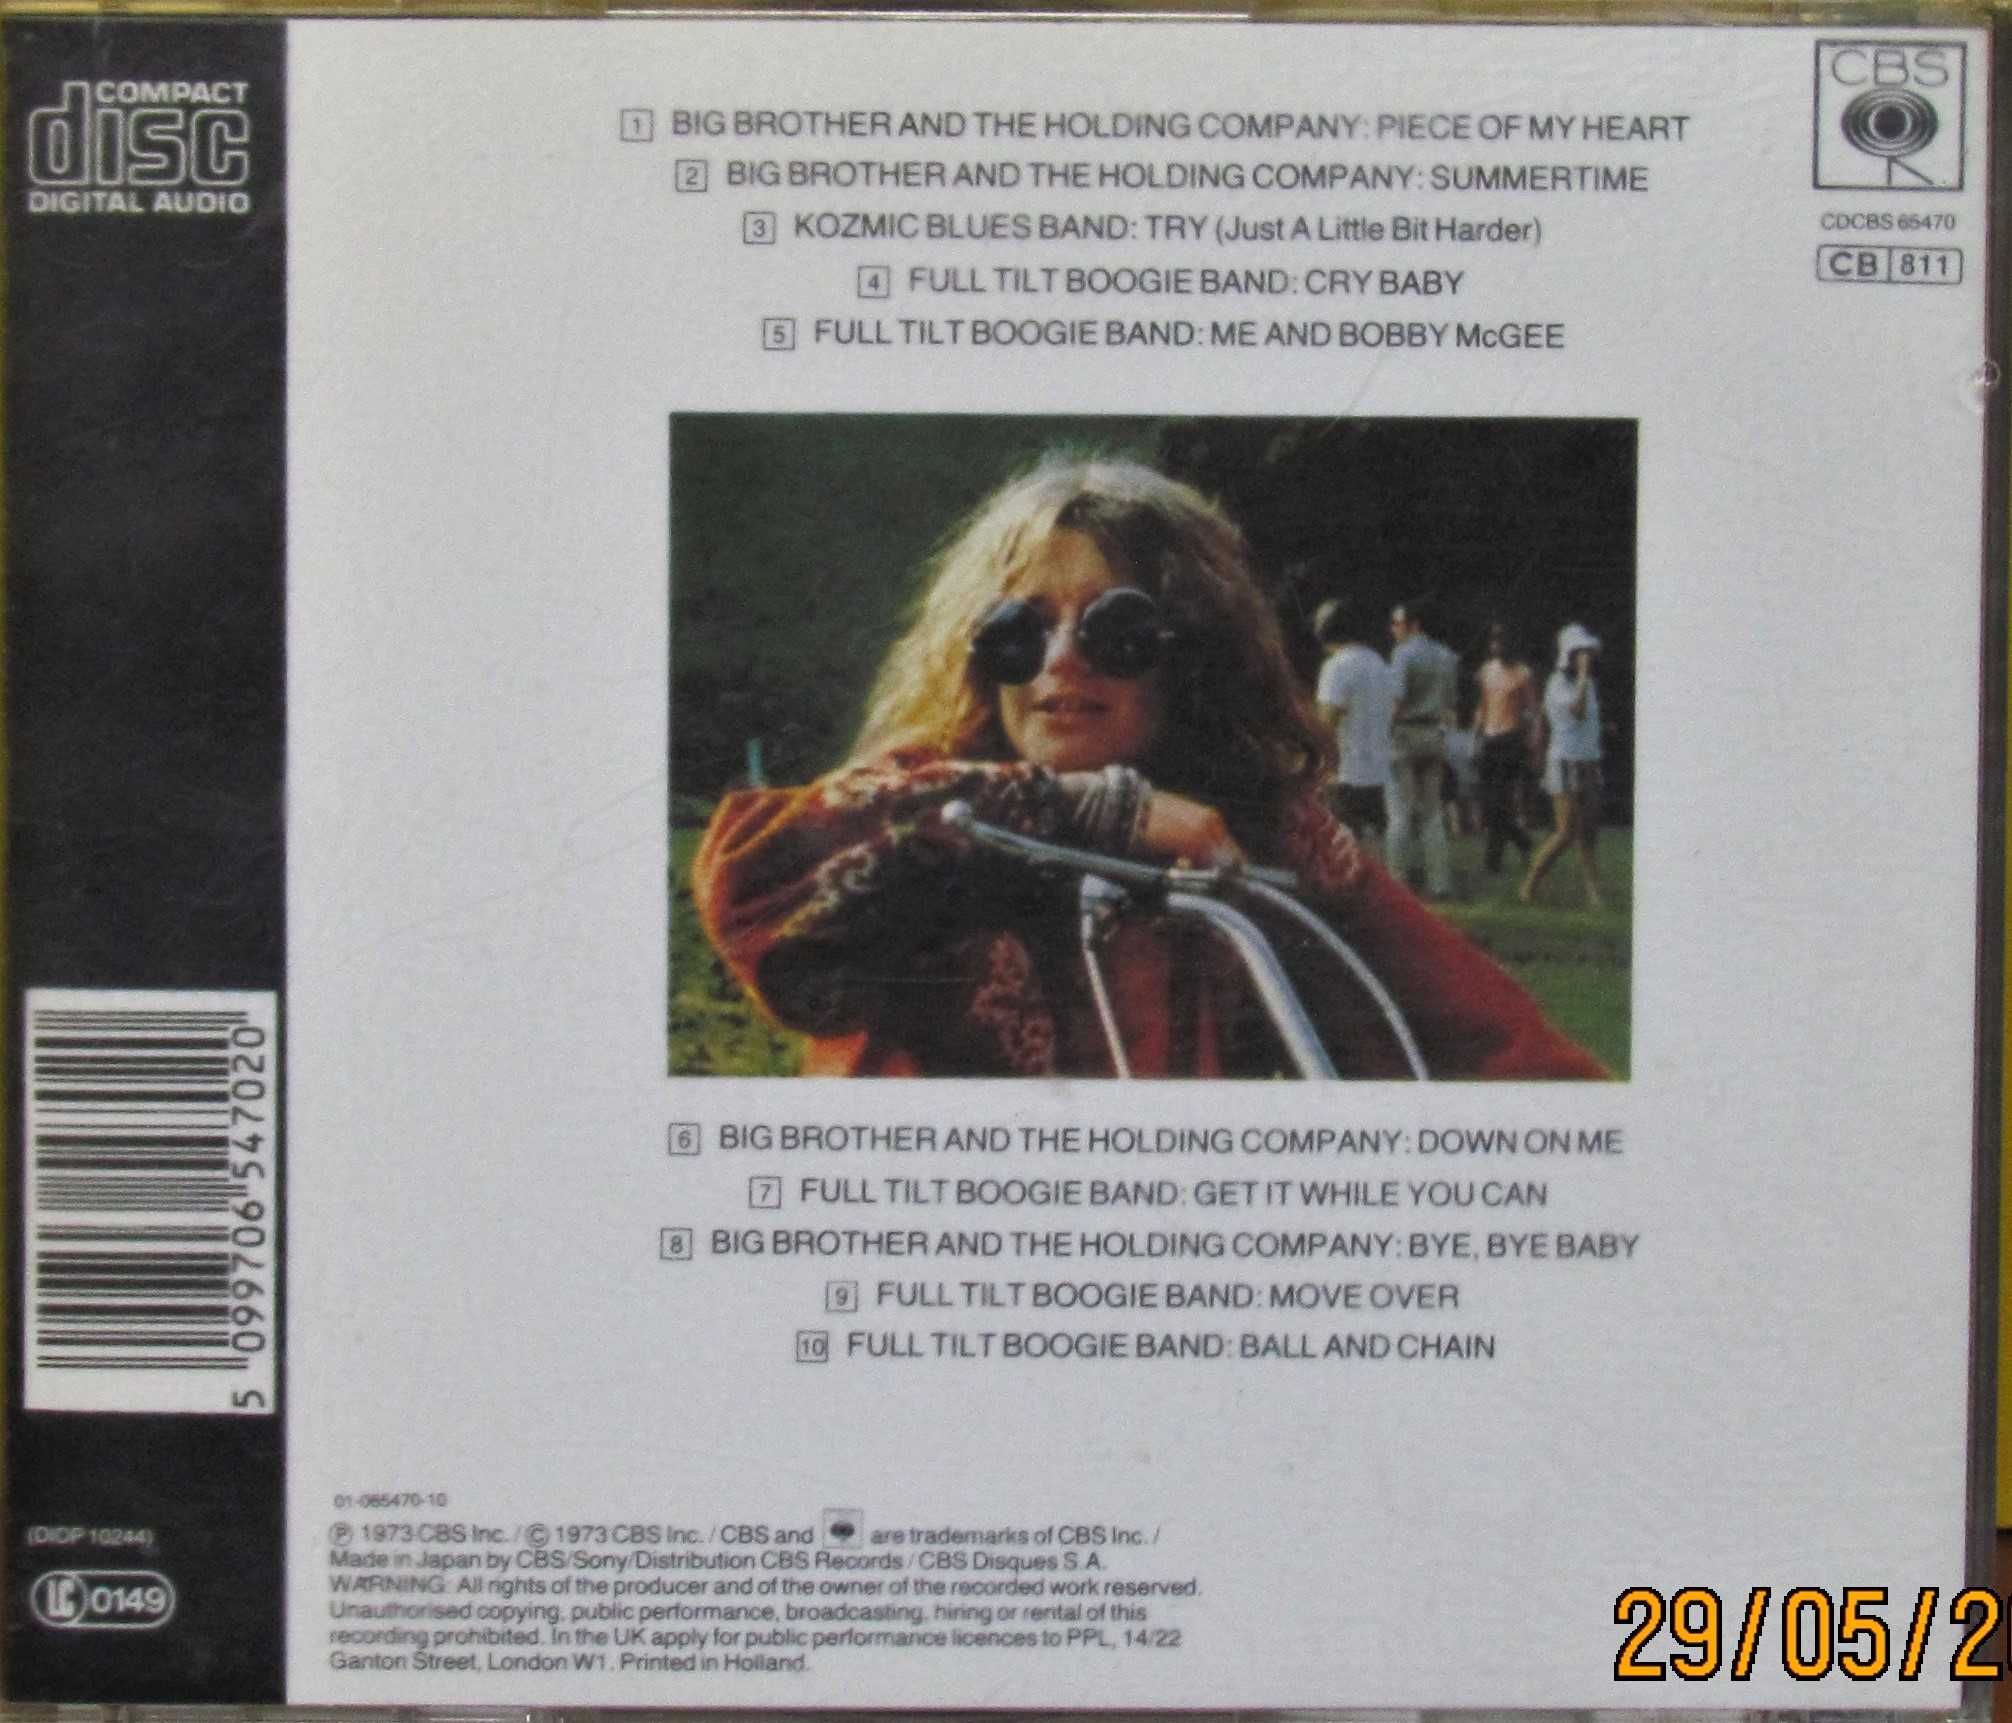 Janis Joplin – Janis Joplin's Greatest Hits;  1 wydanie na CD, 1985 r.